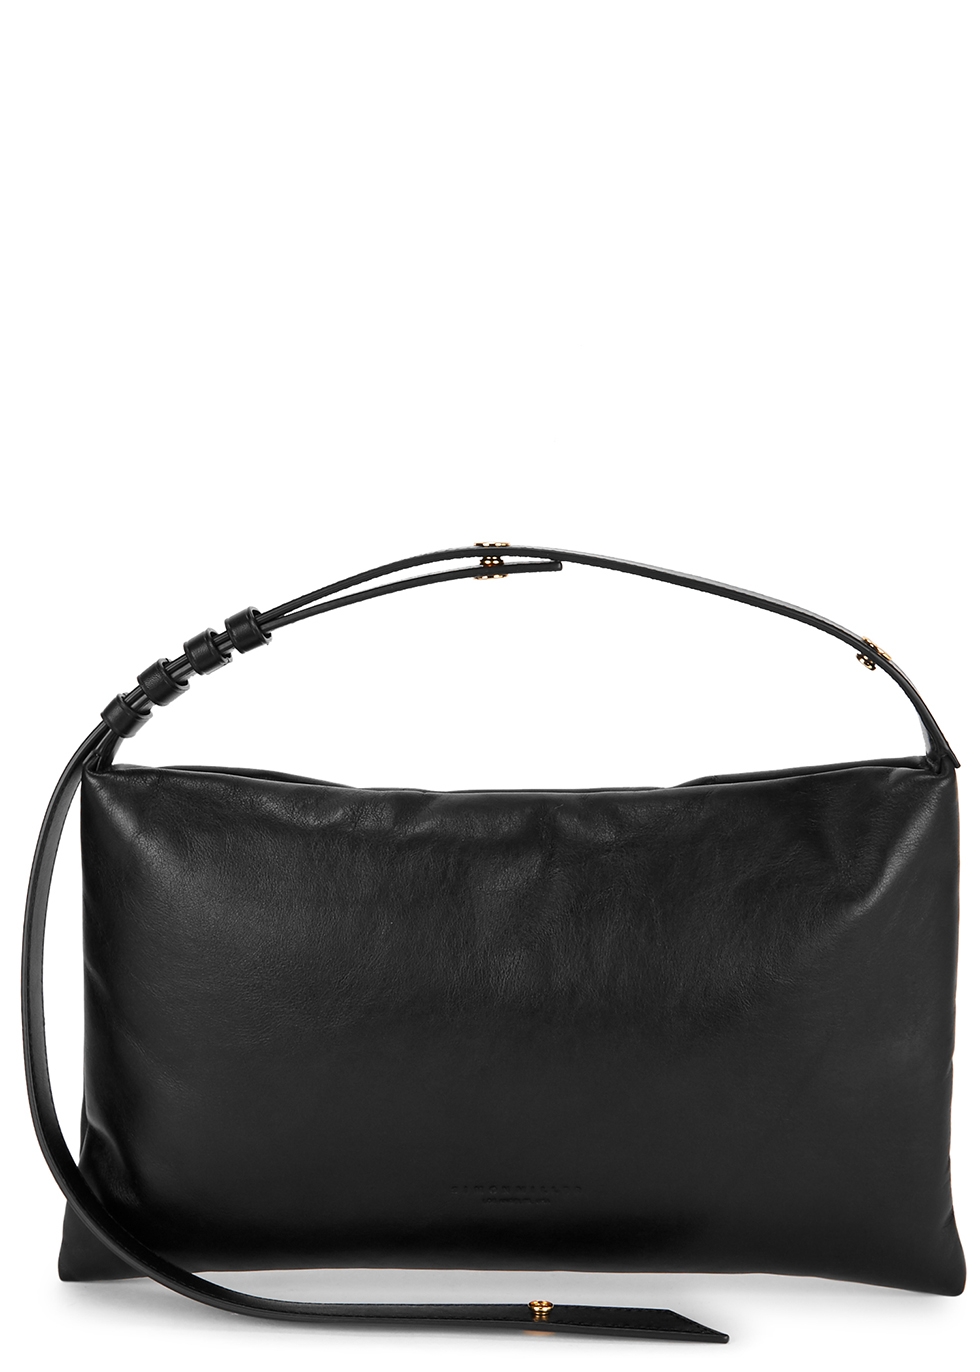 Puffin medium black leather shoulder bag